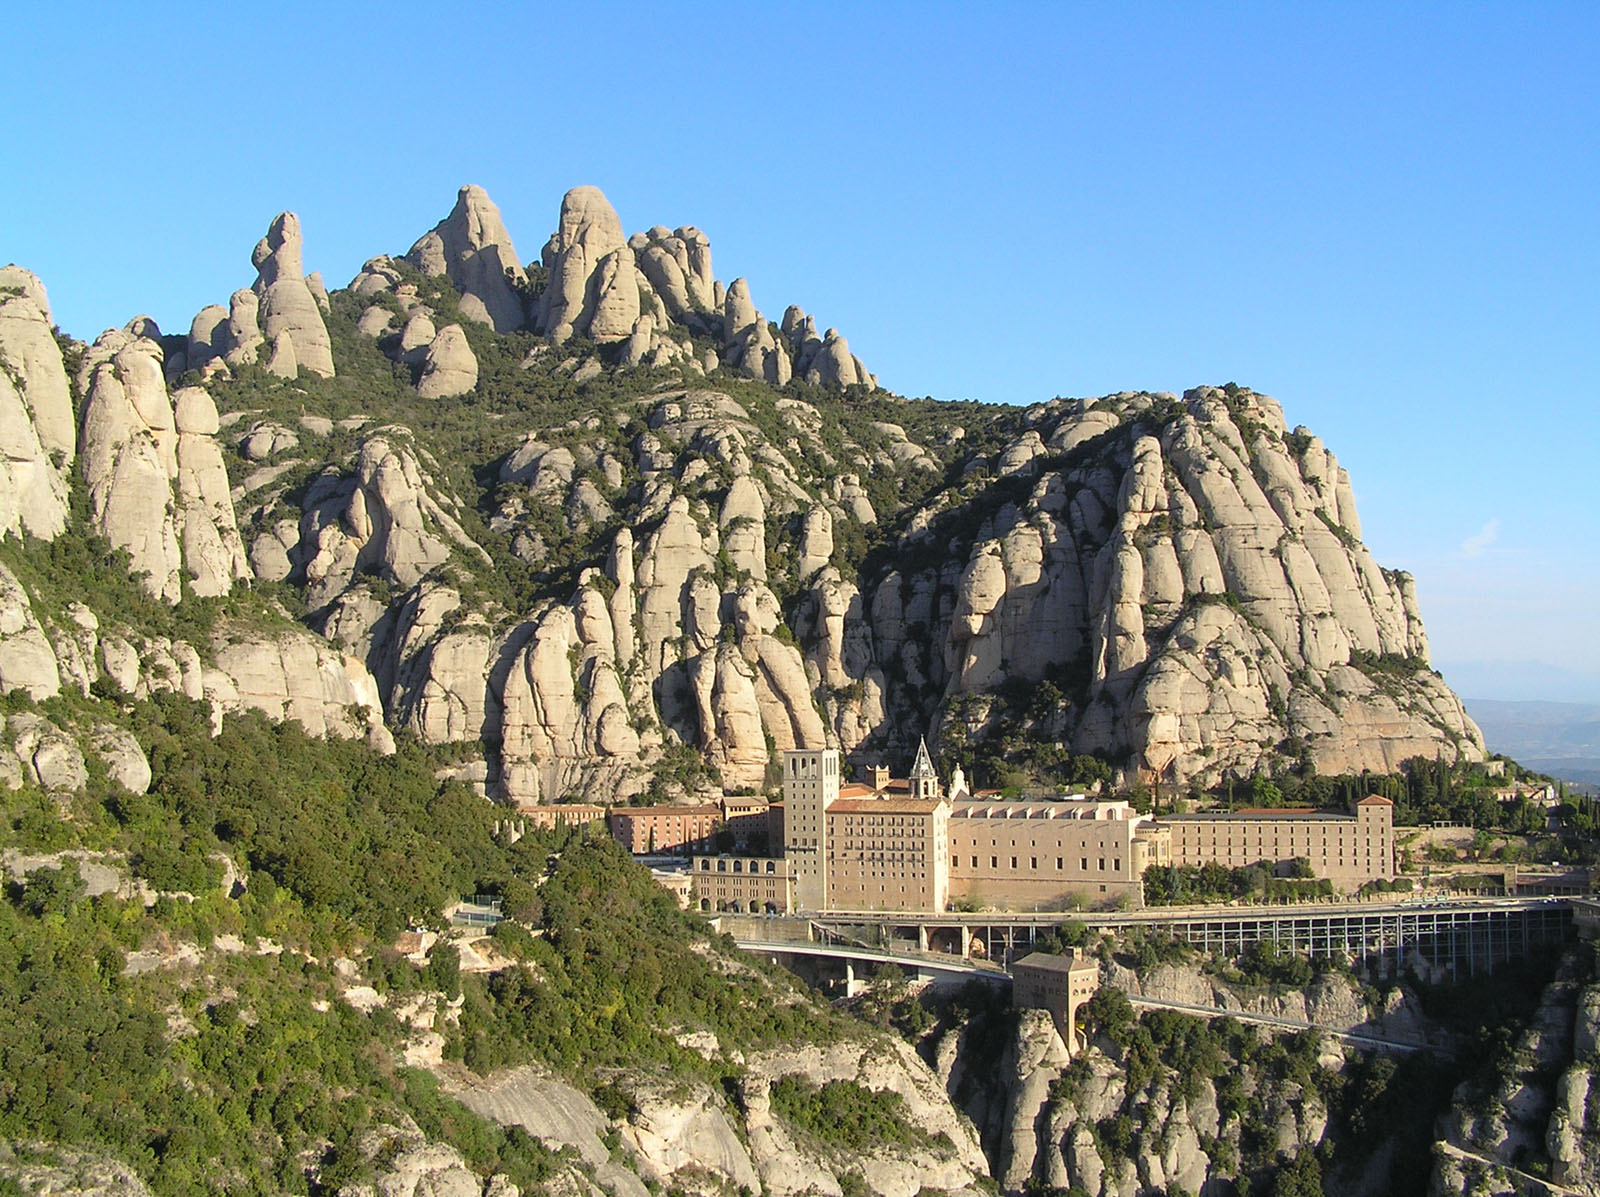 Vista del Santuari i del Parc Natural de Montserrat / Vista del Santuario y del Parque Natural de Montserrat